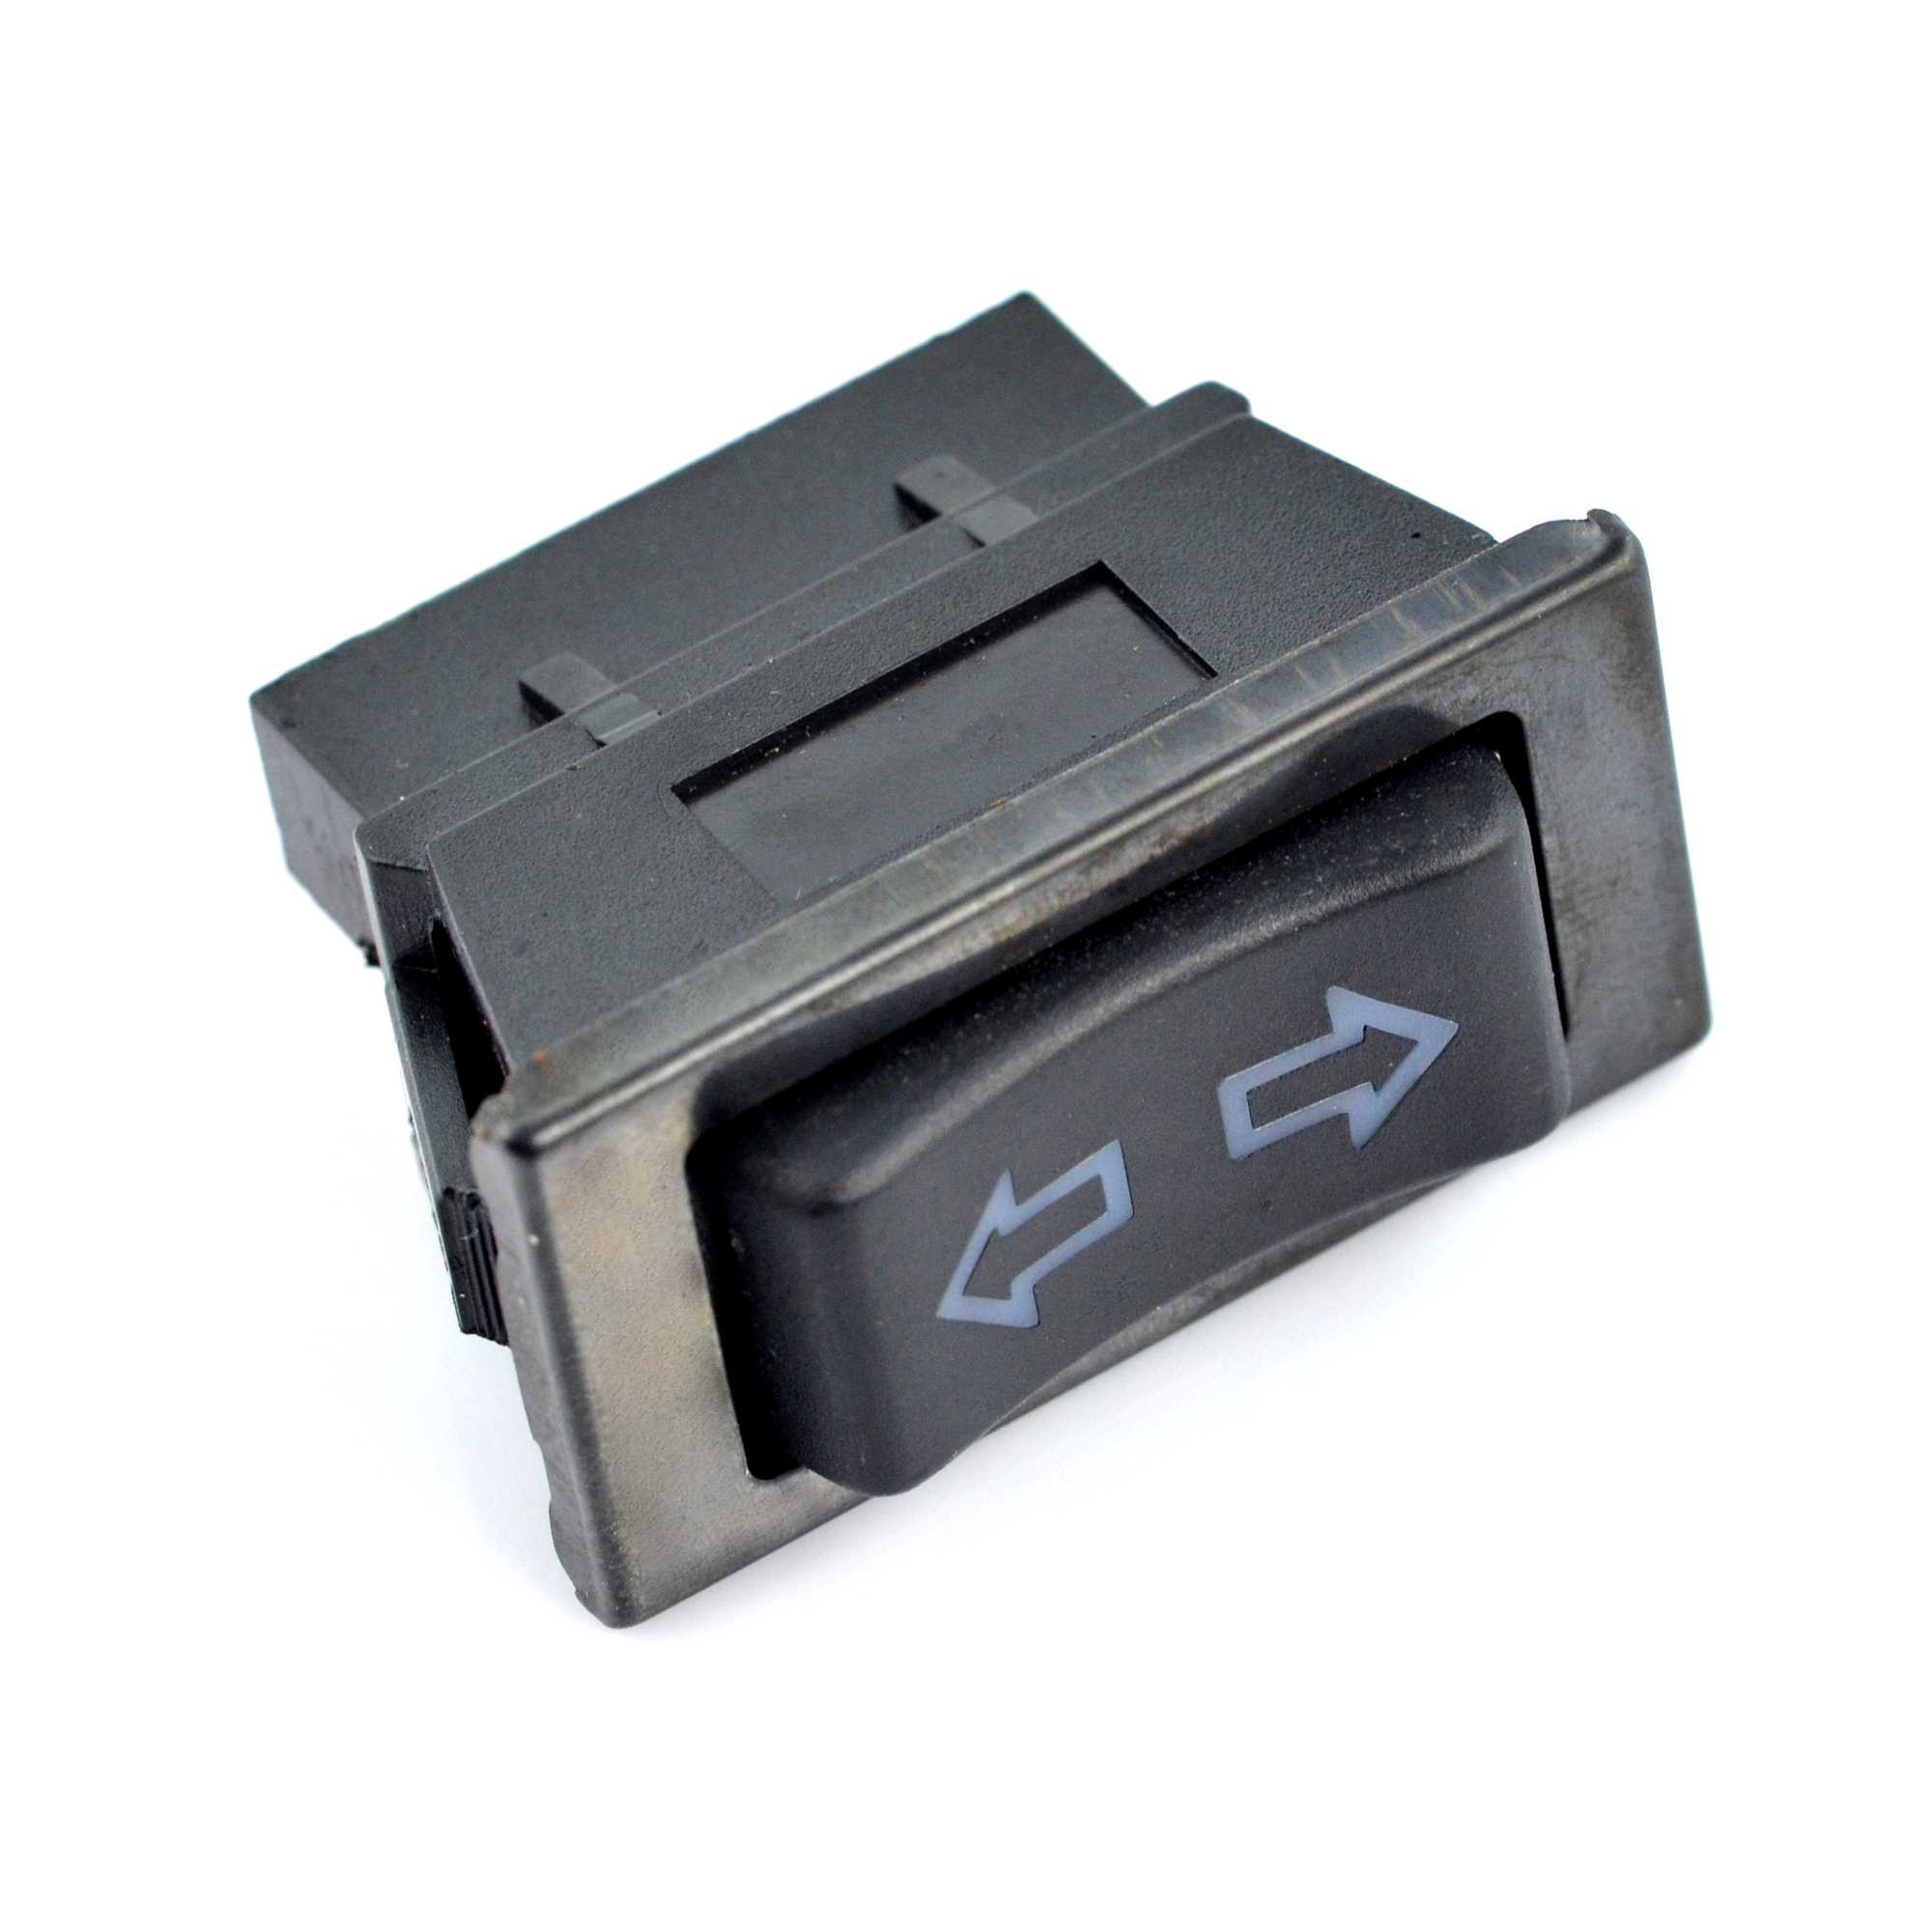 Paket] 2x Auto Batterie Trenner Unterbrecher Trennschalter